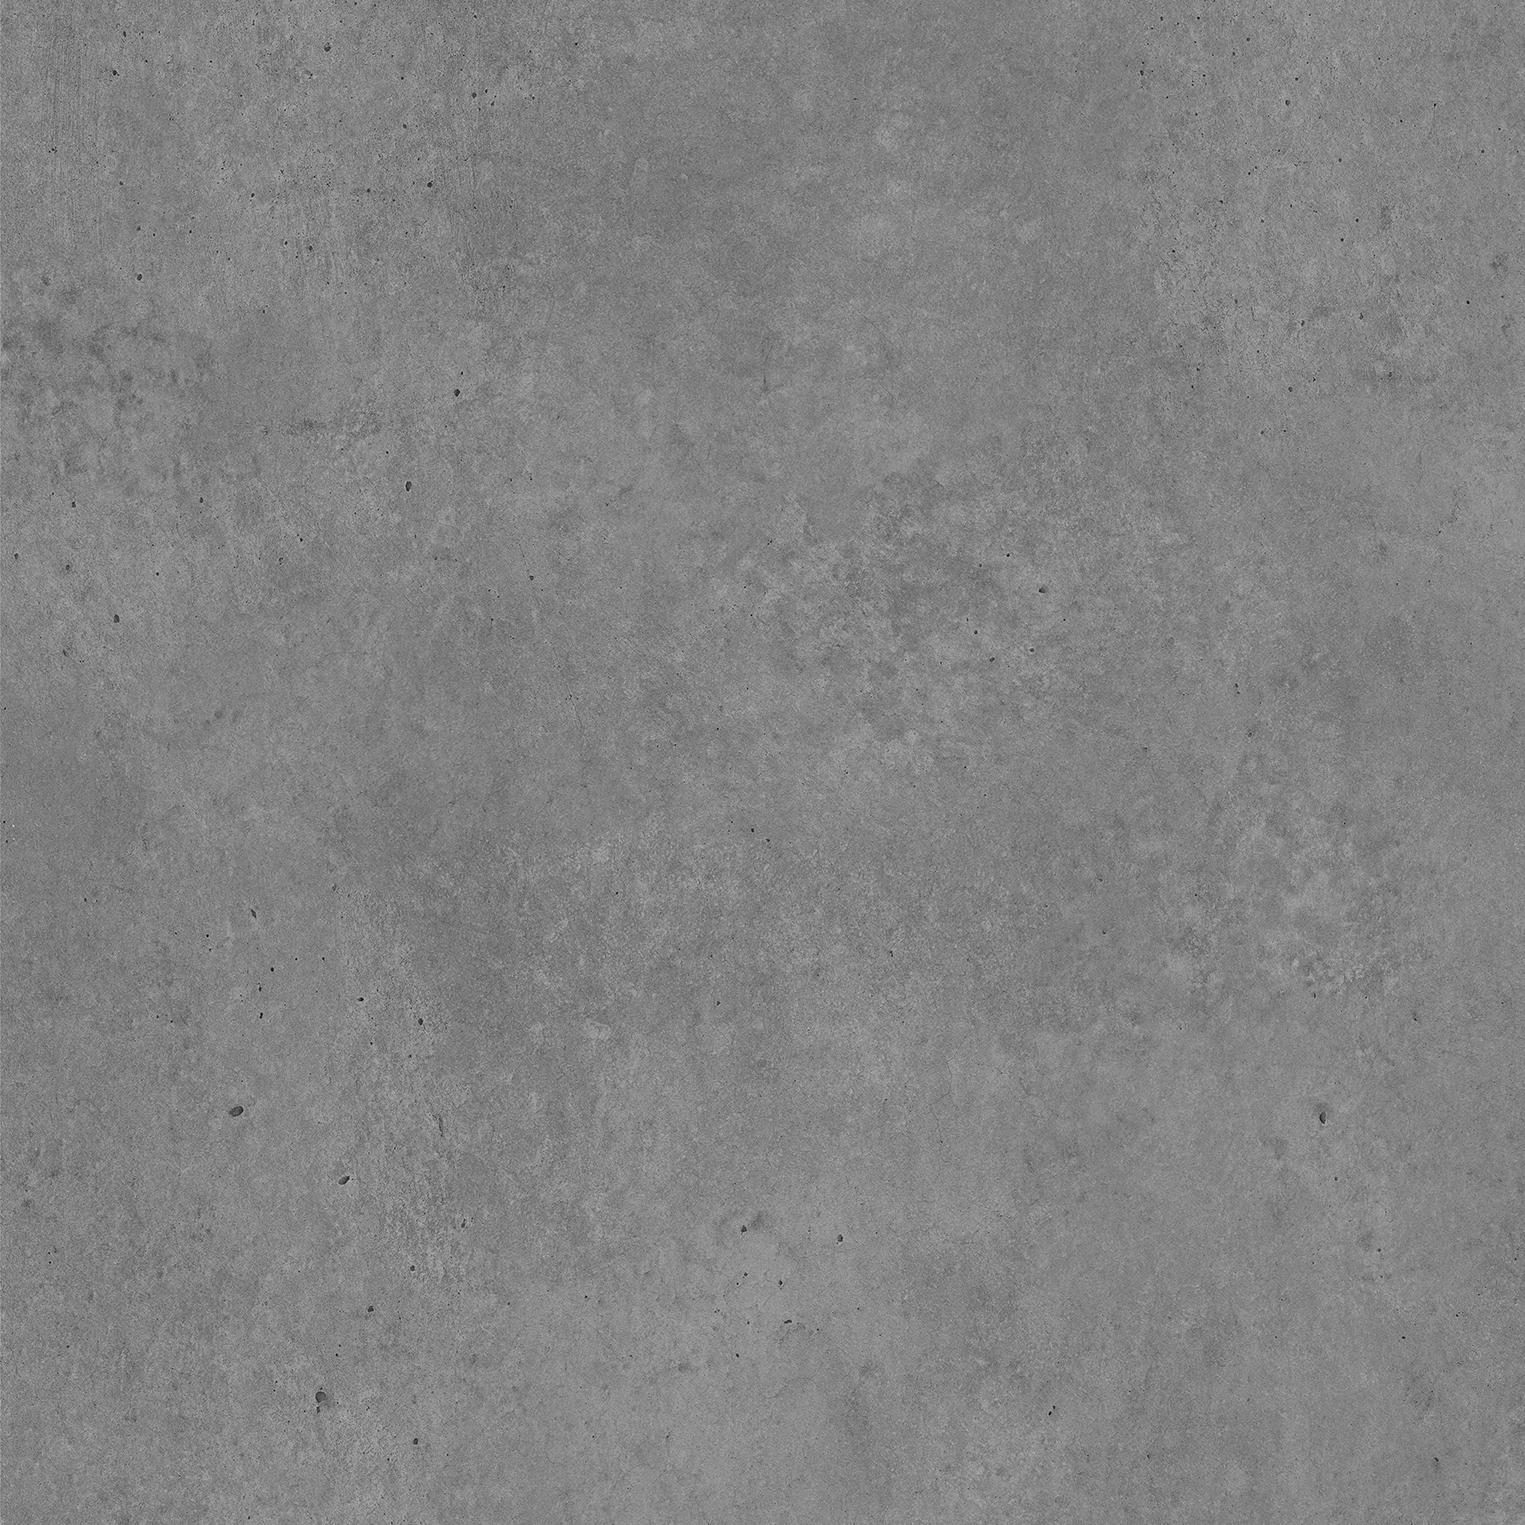 IPW 557 - Grey Concrete